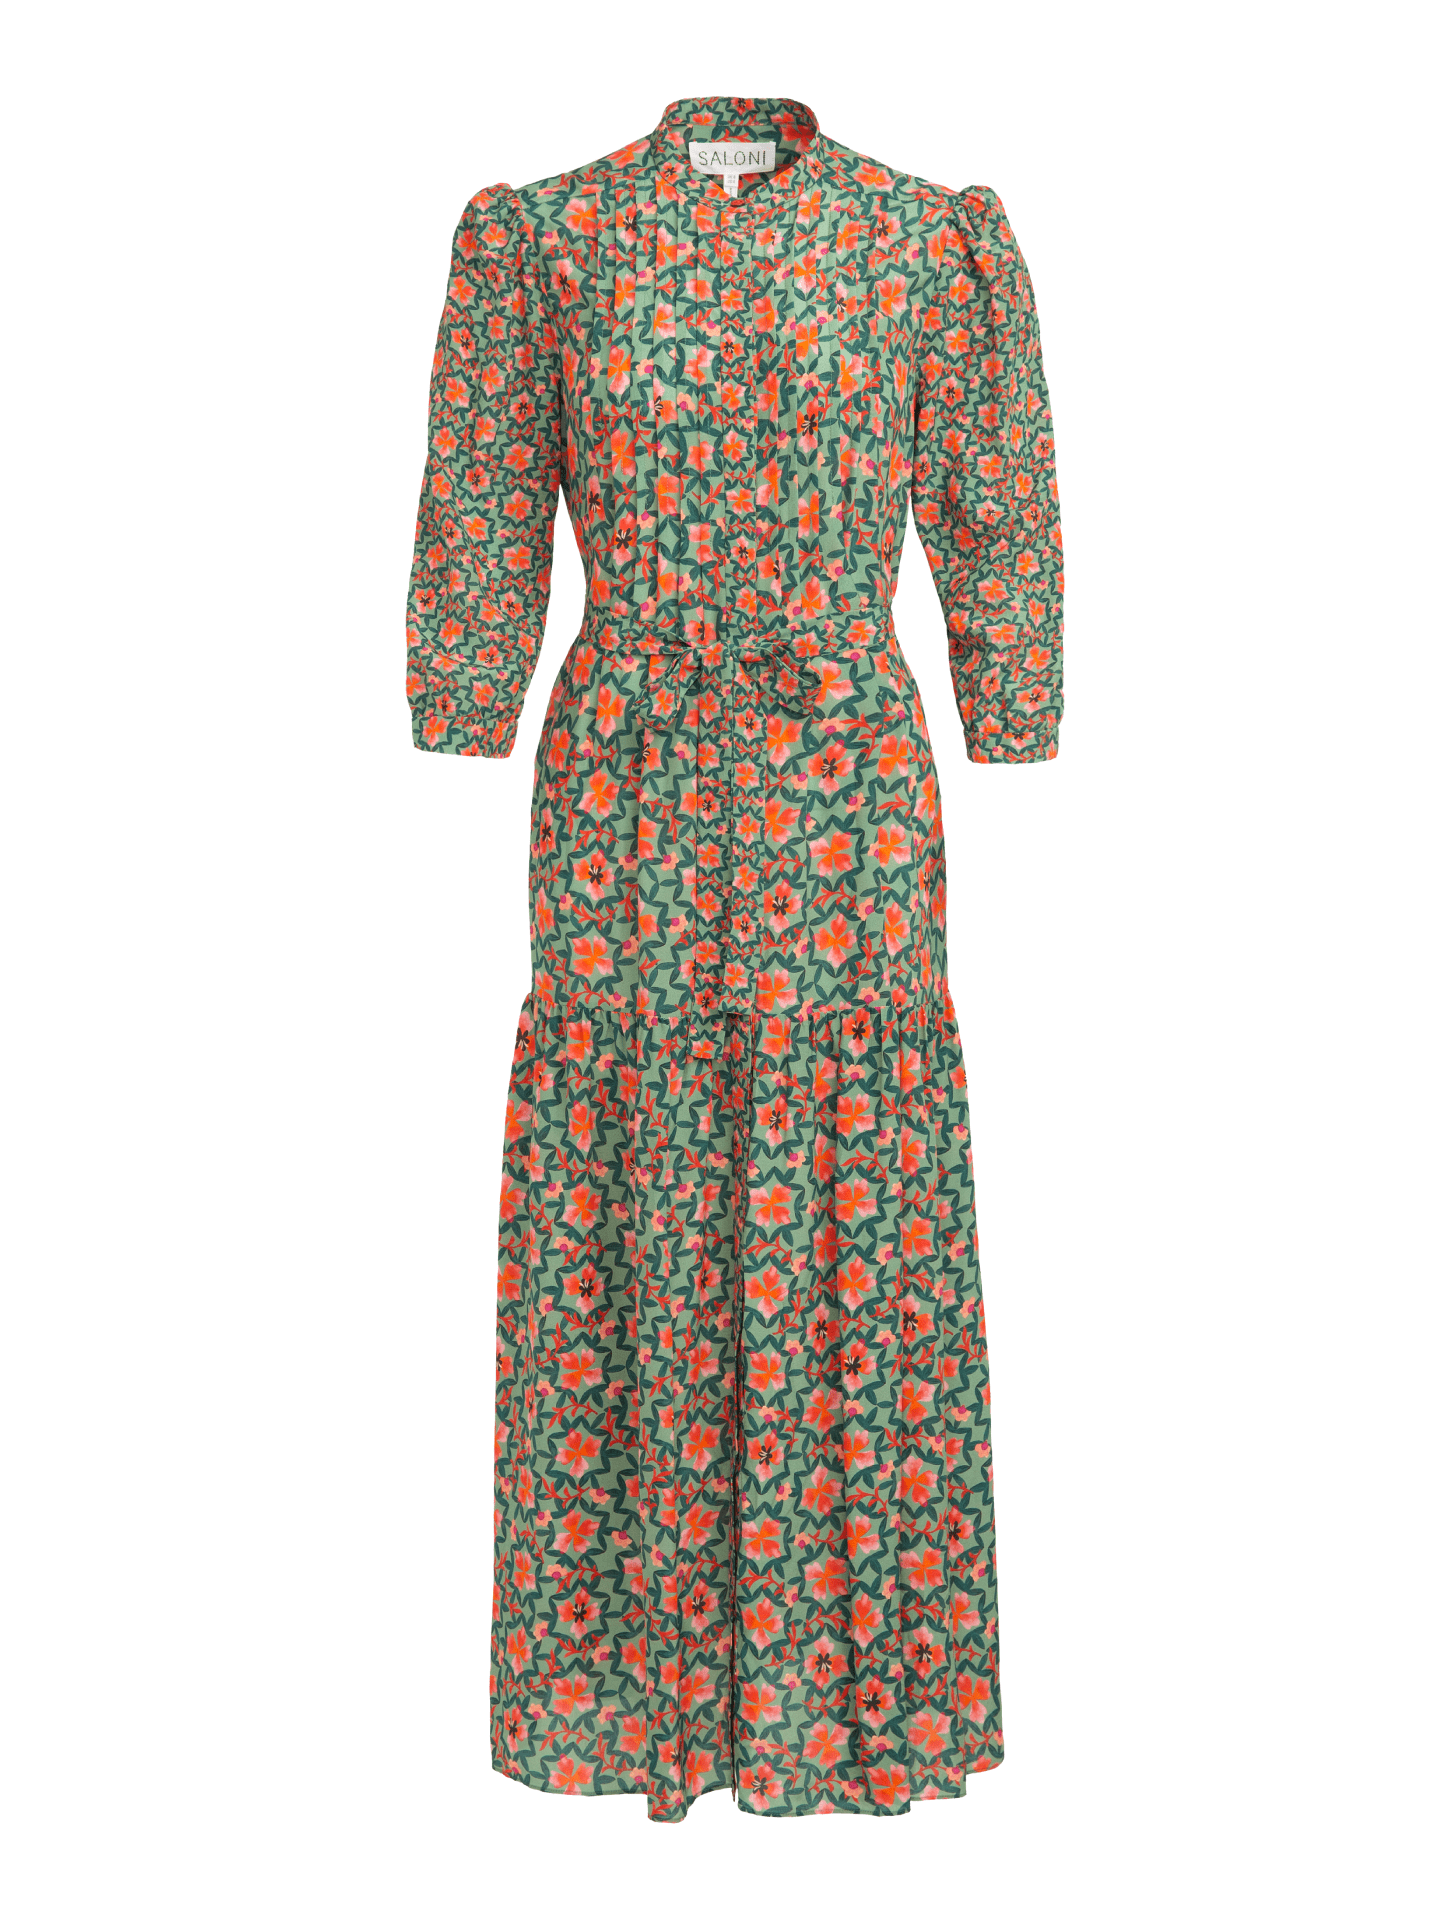 Remi-C Dress in Sorrel Olive